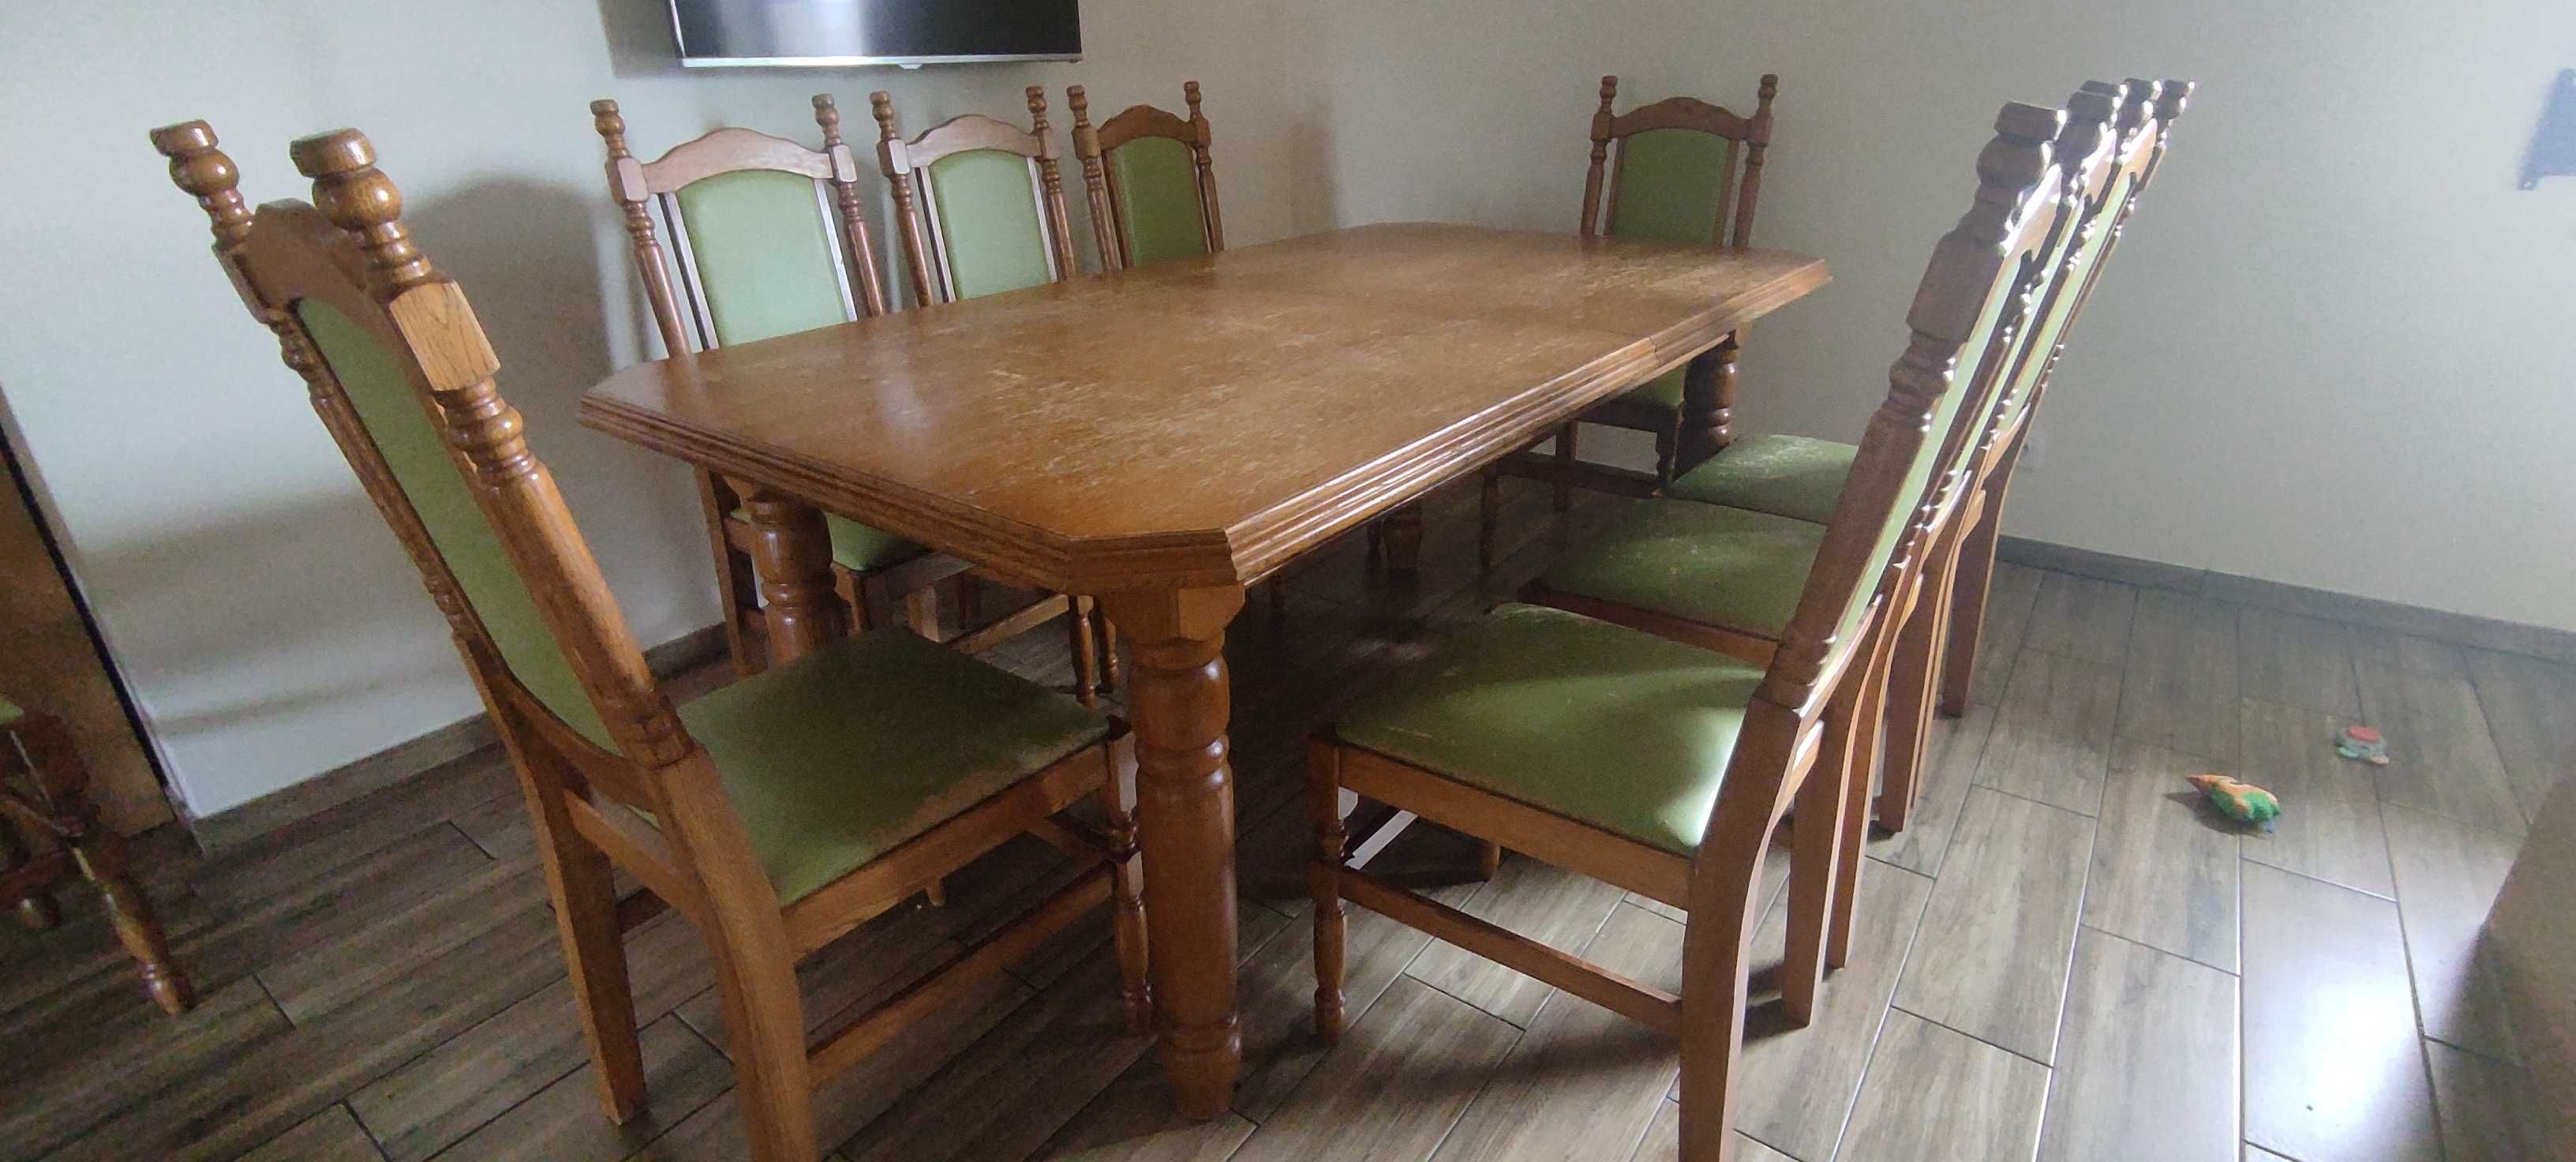 Lity stół dębowy rozkładany + 10 krzeseł - Do renowacji